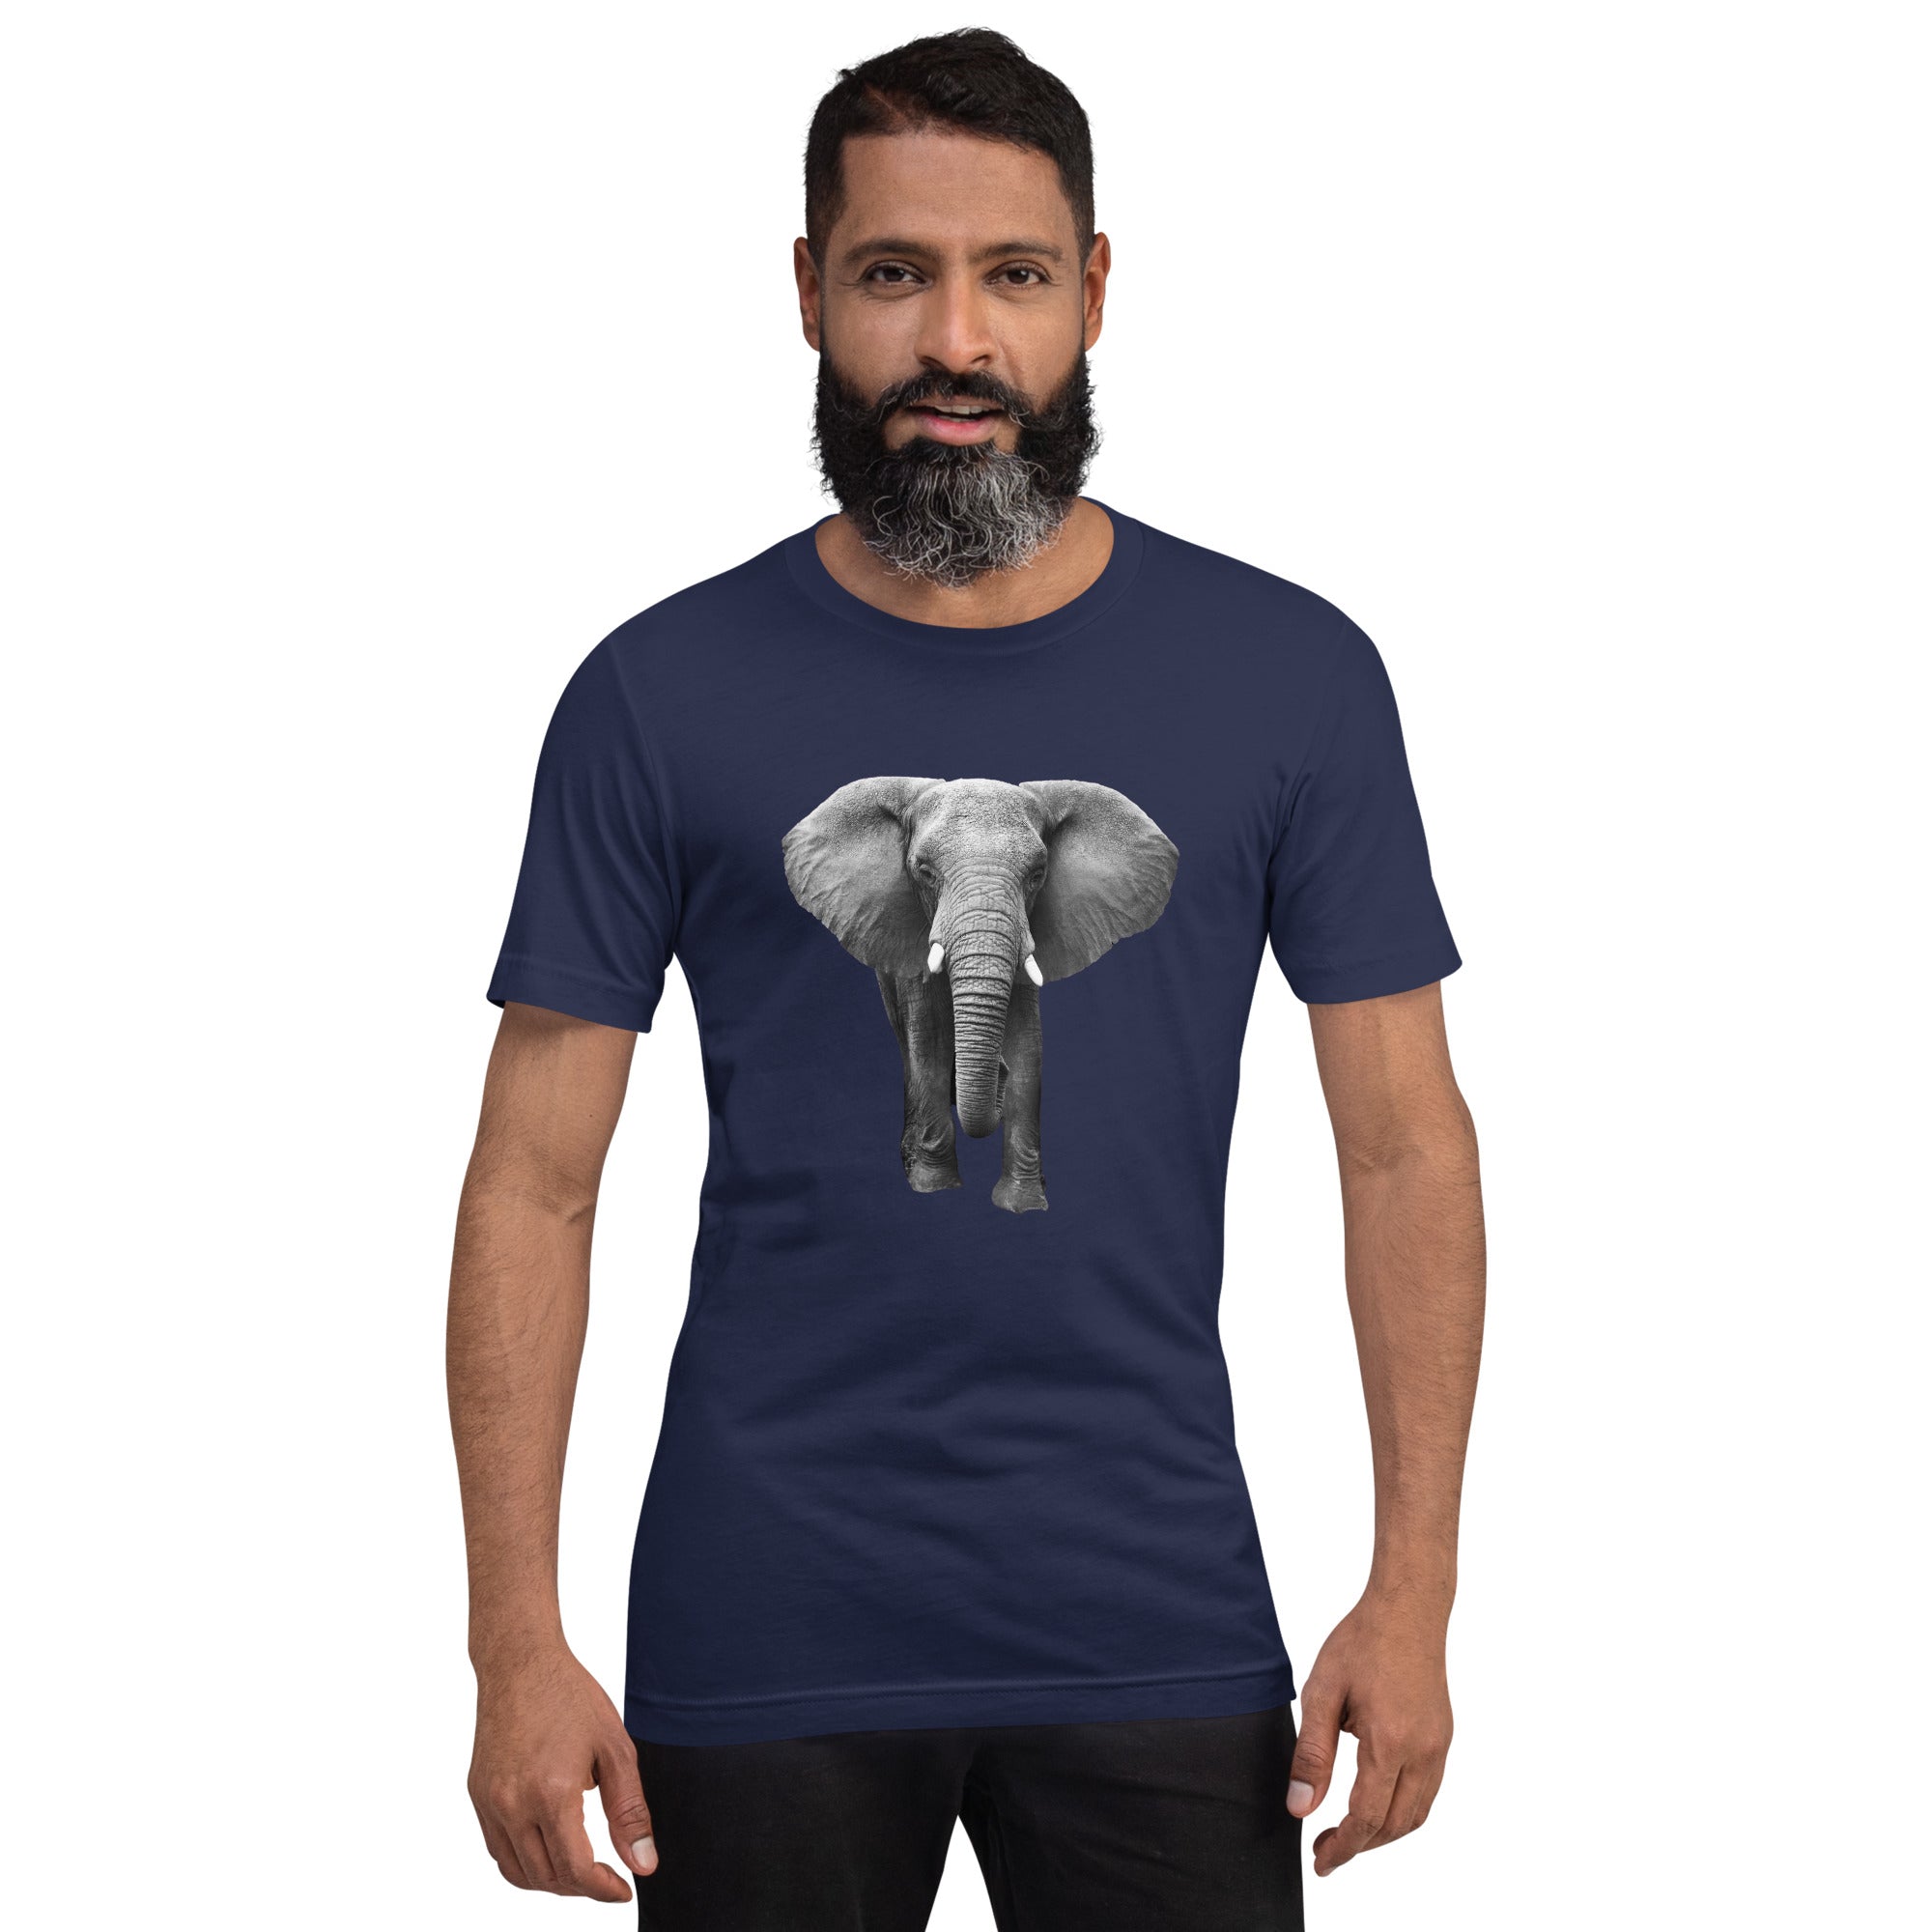 Elephant on a blue t-shirt